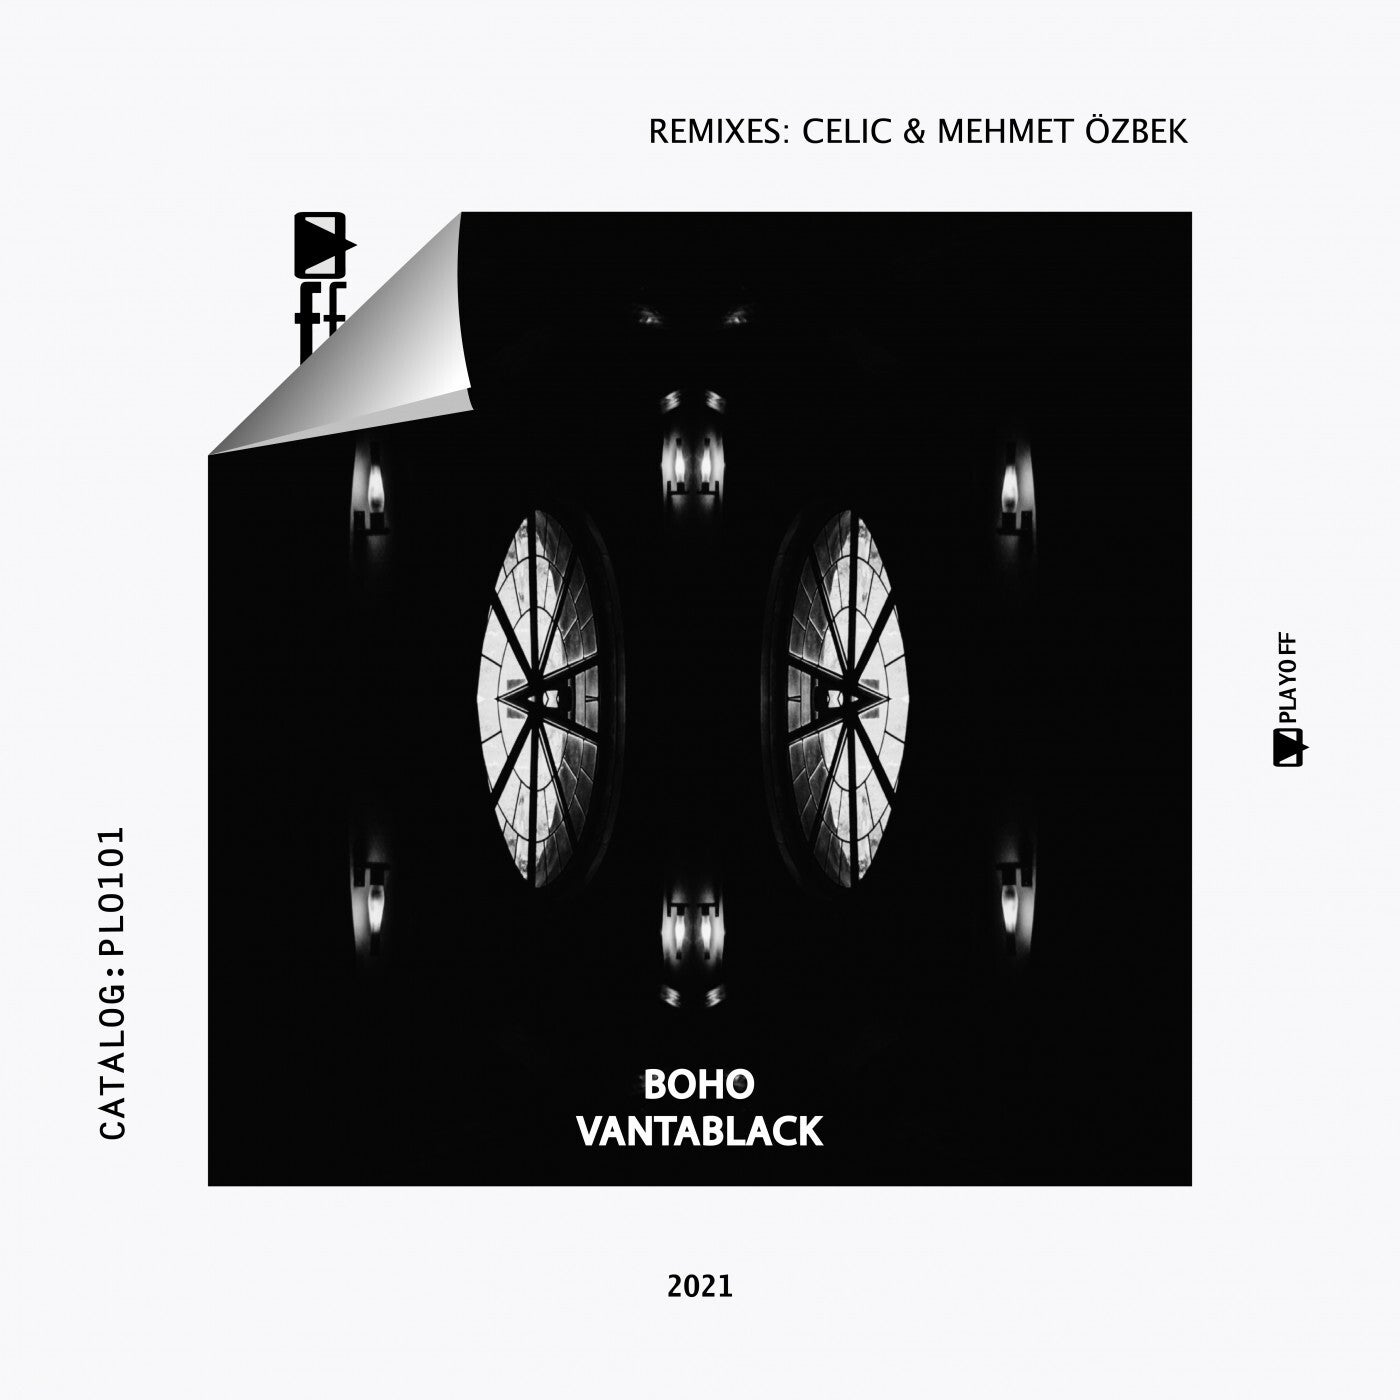 BOHO – Vantablack (Celic, Mehmet Özbek Remixes) [PLO101]